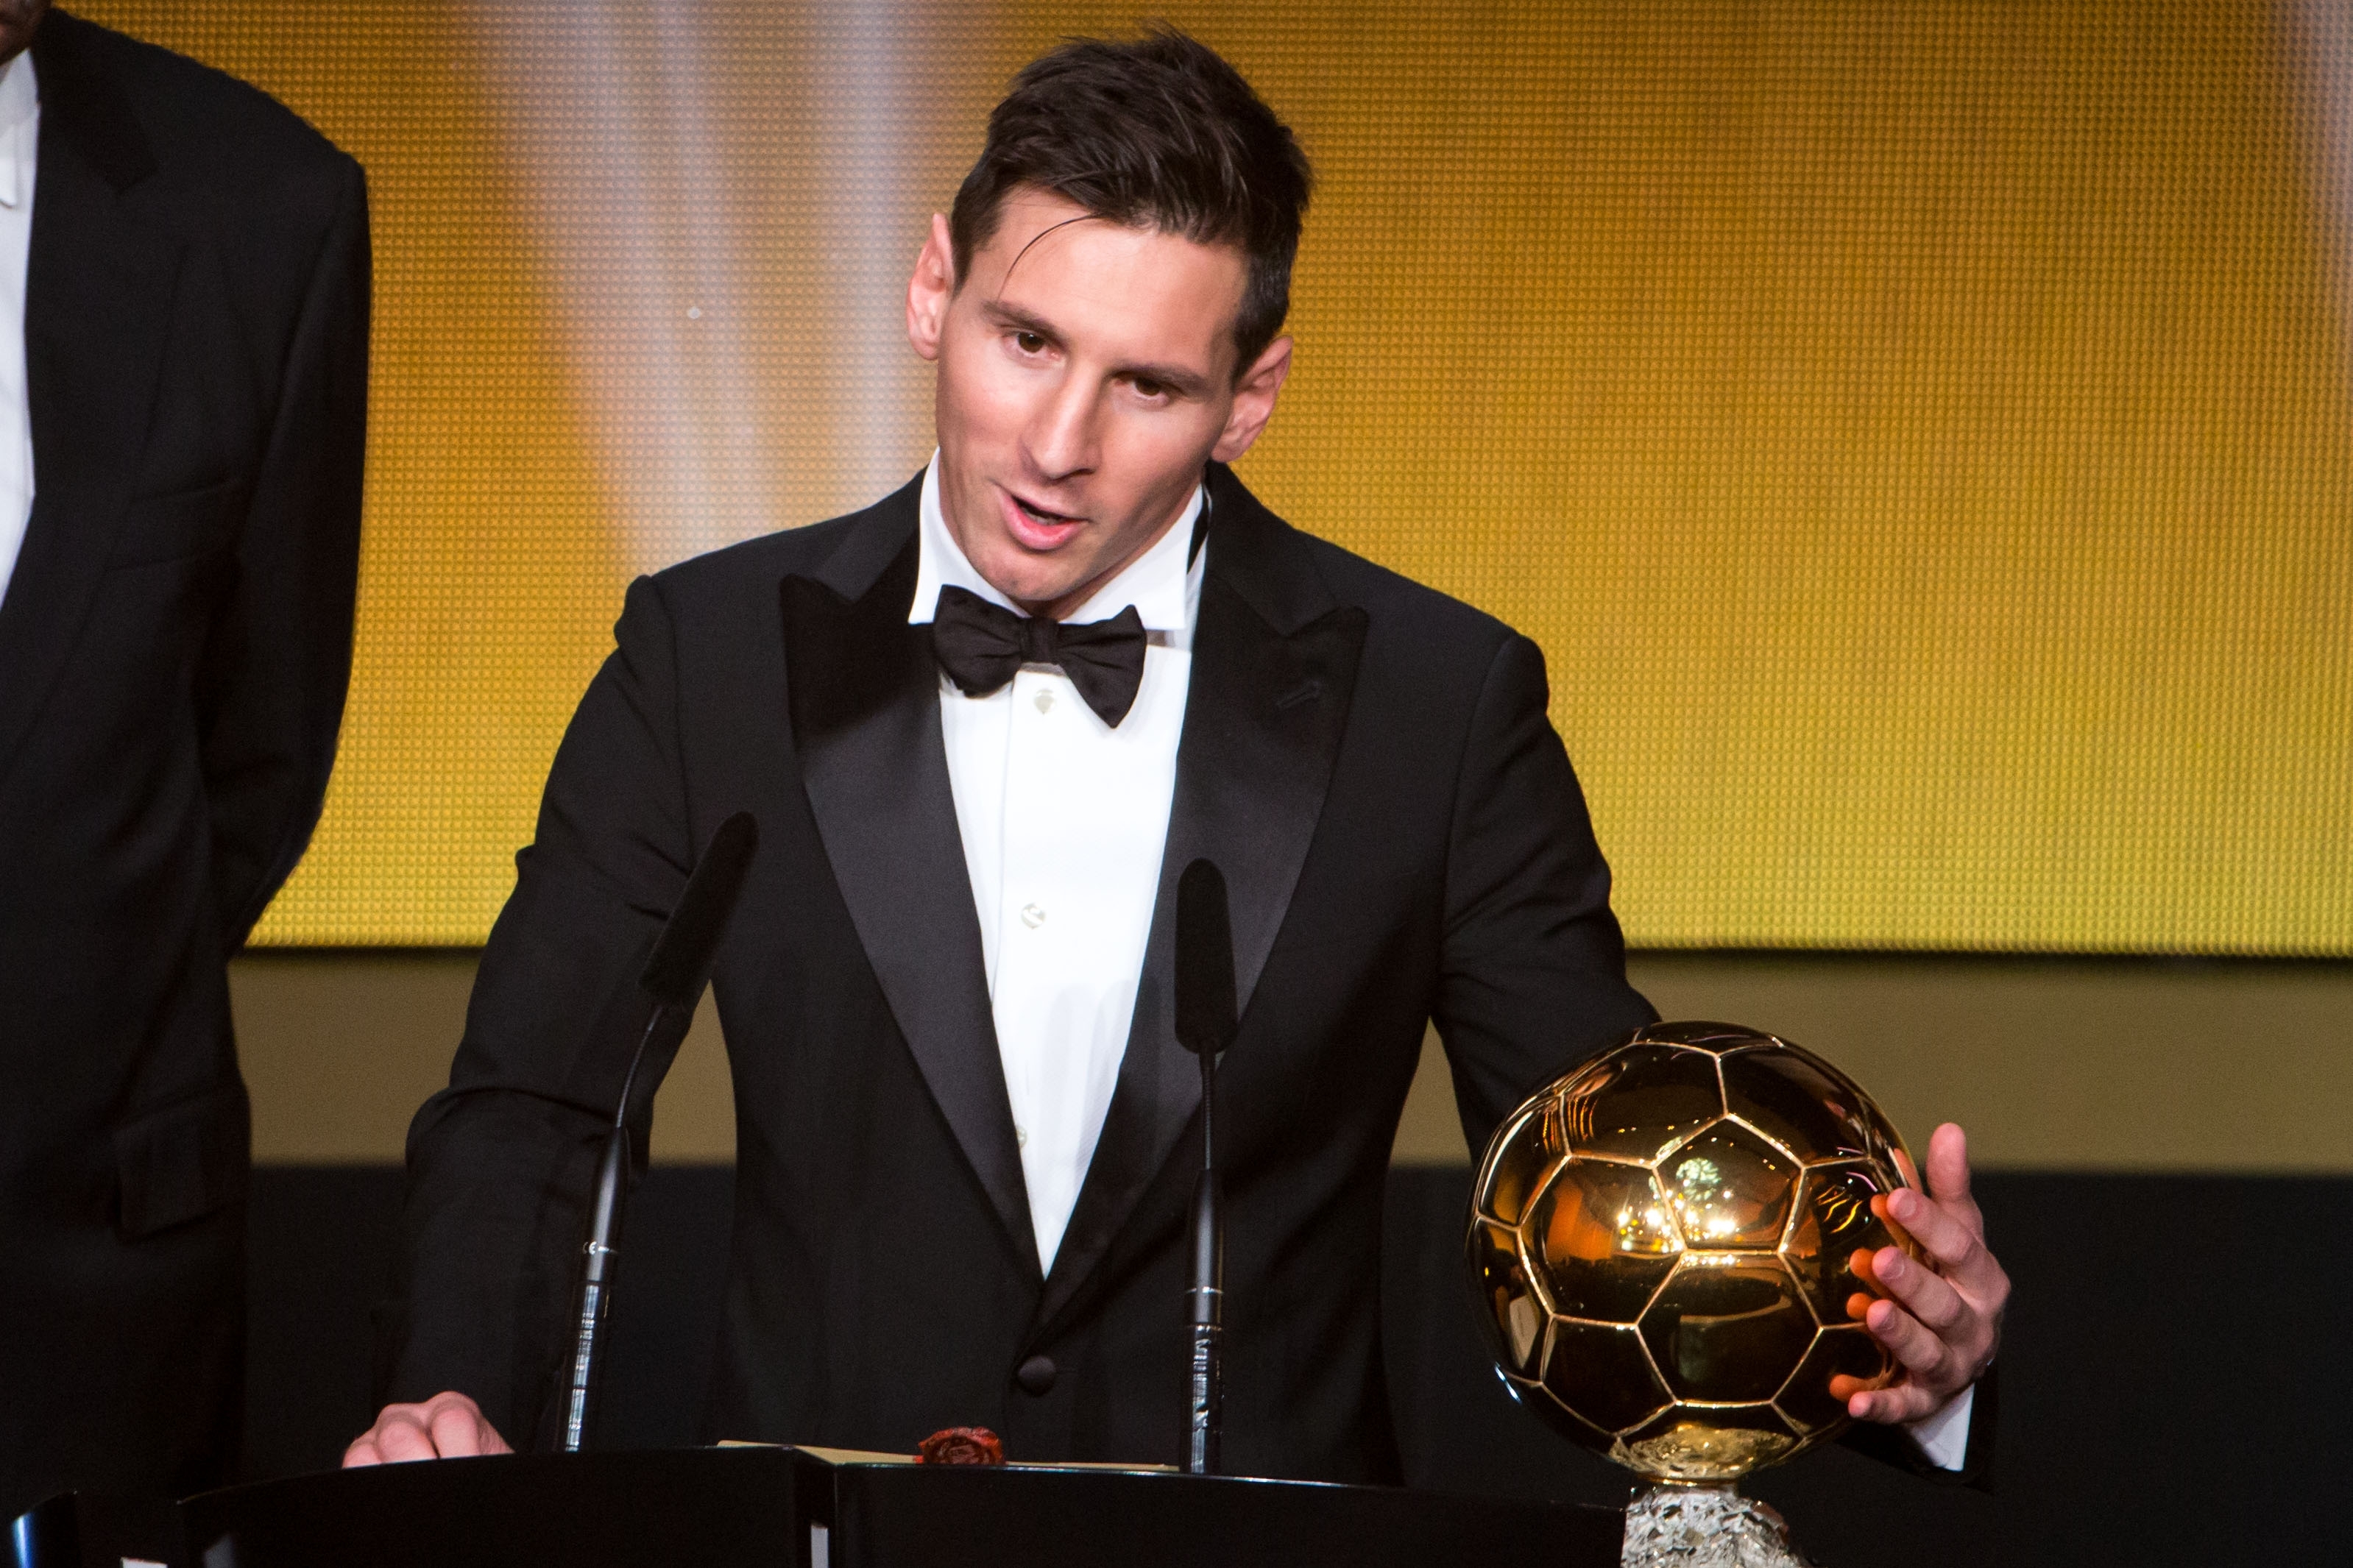 FIFA Ballon d'Or winner Lionel Messi